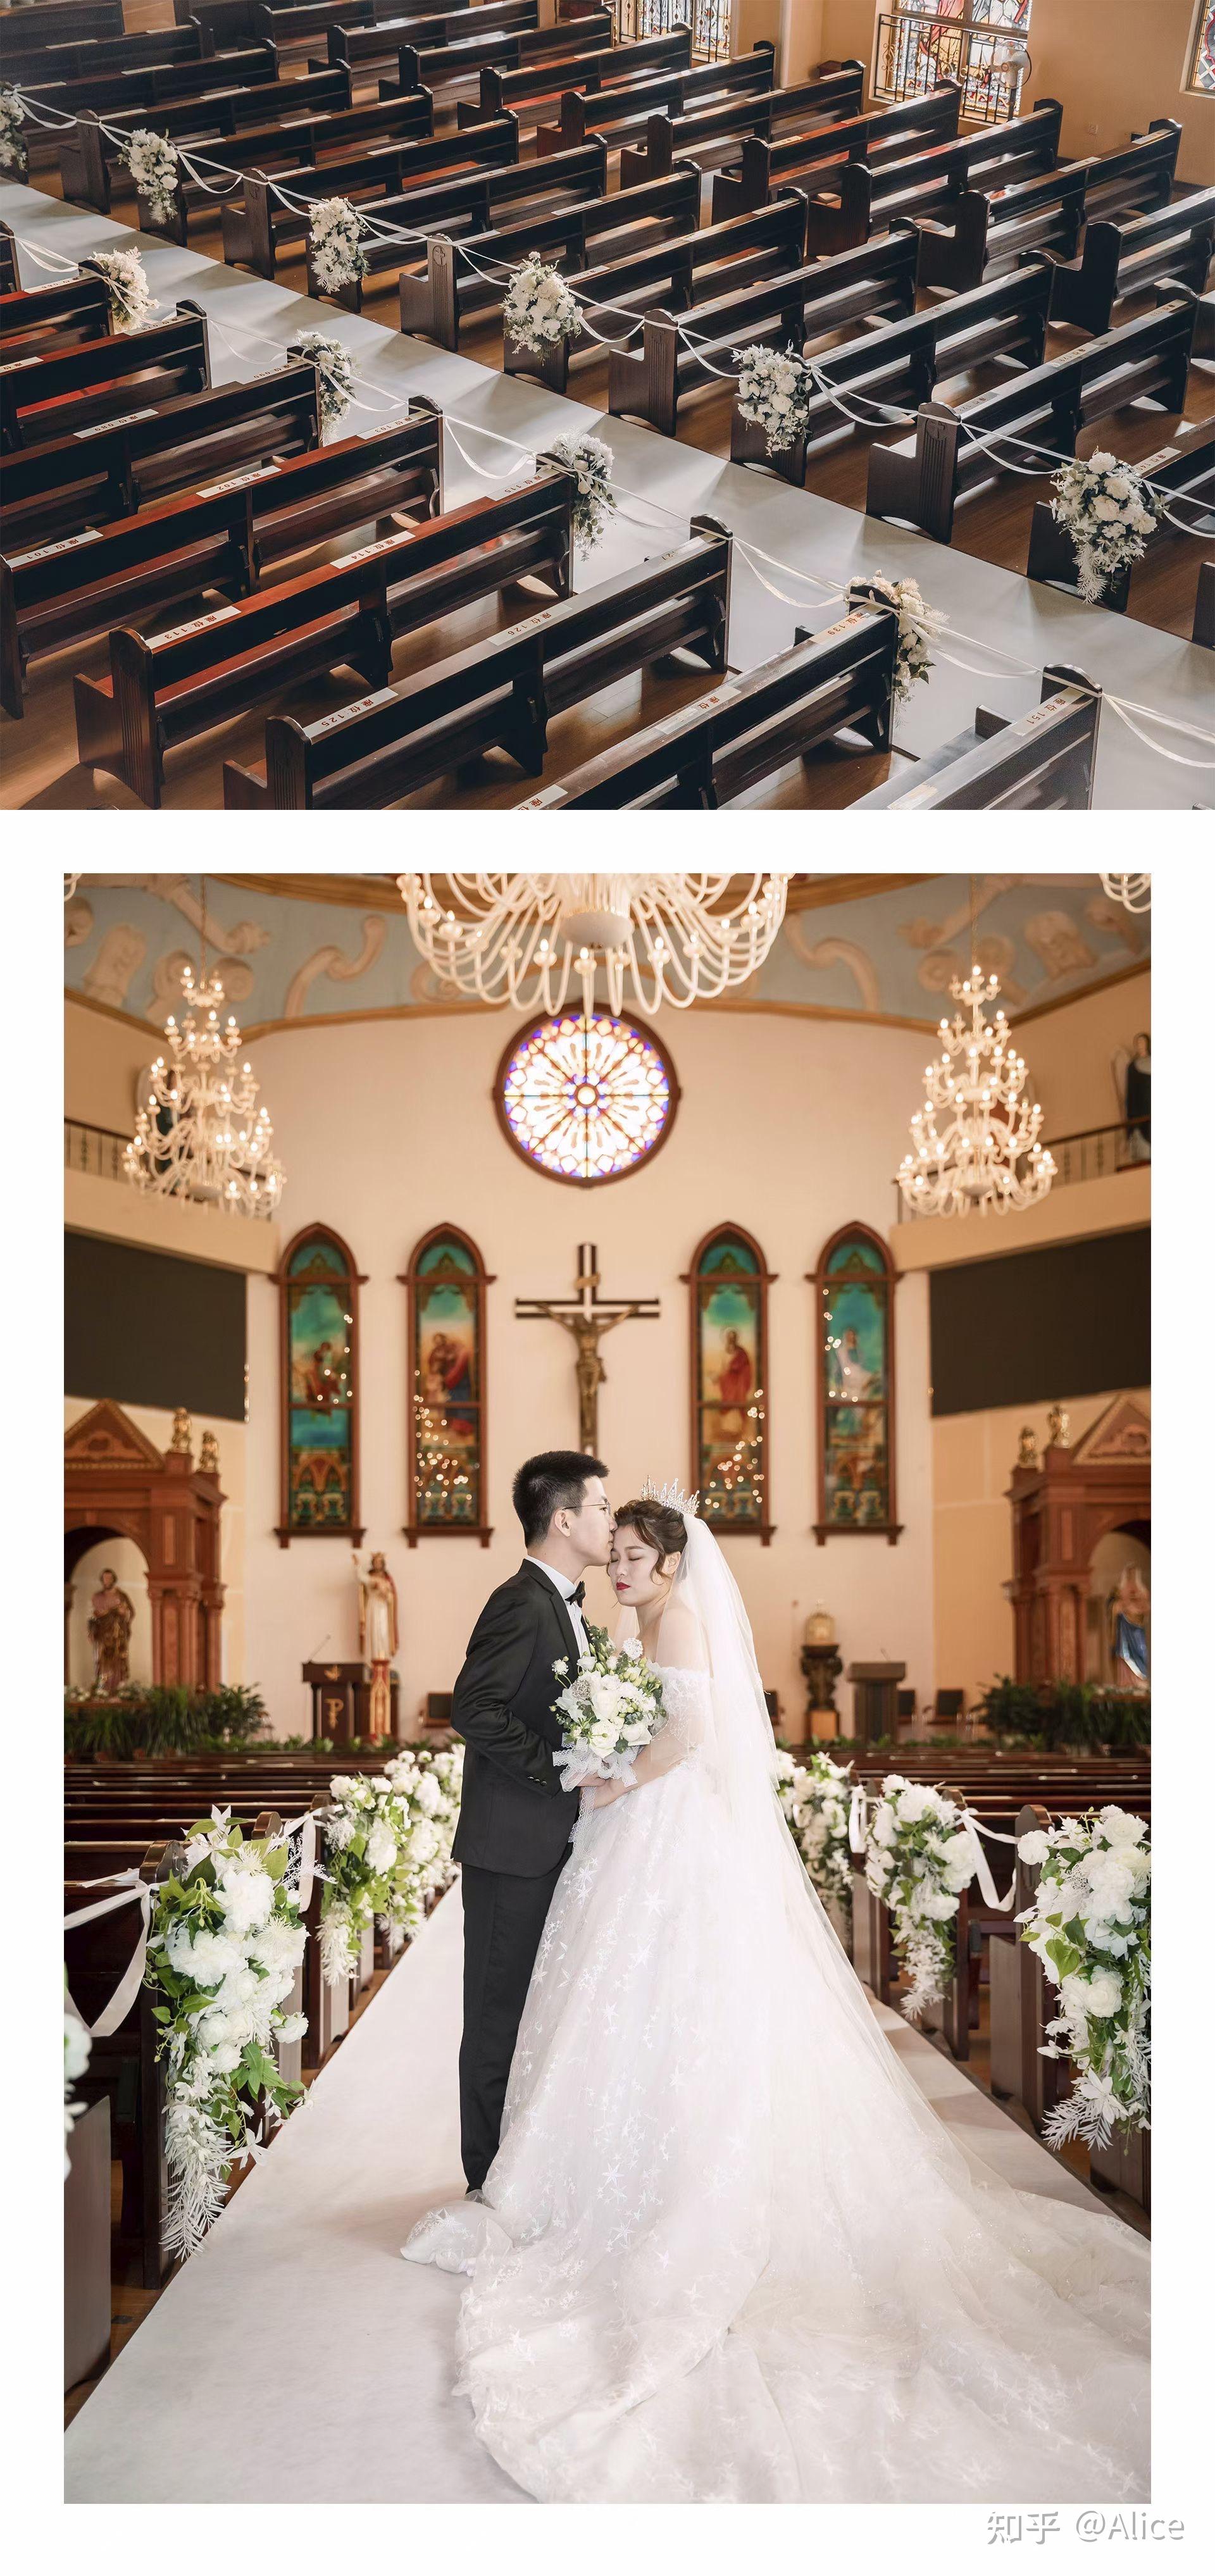 经典搭配简单的鲜花点缀满足了我对婚礼所有的幻想在庄严神圣的教堂